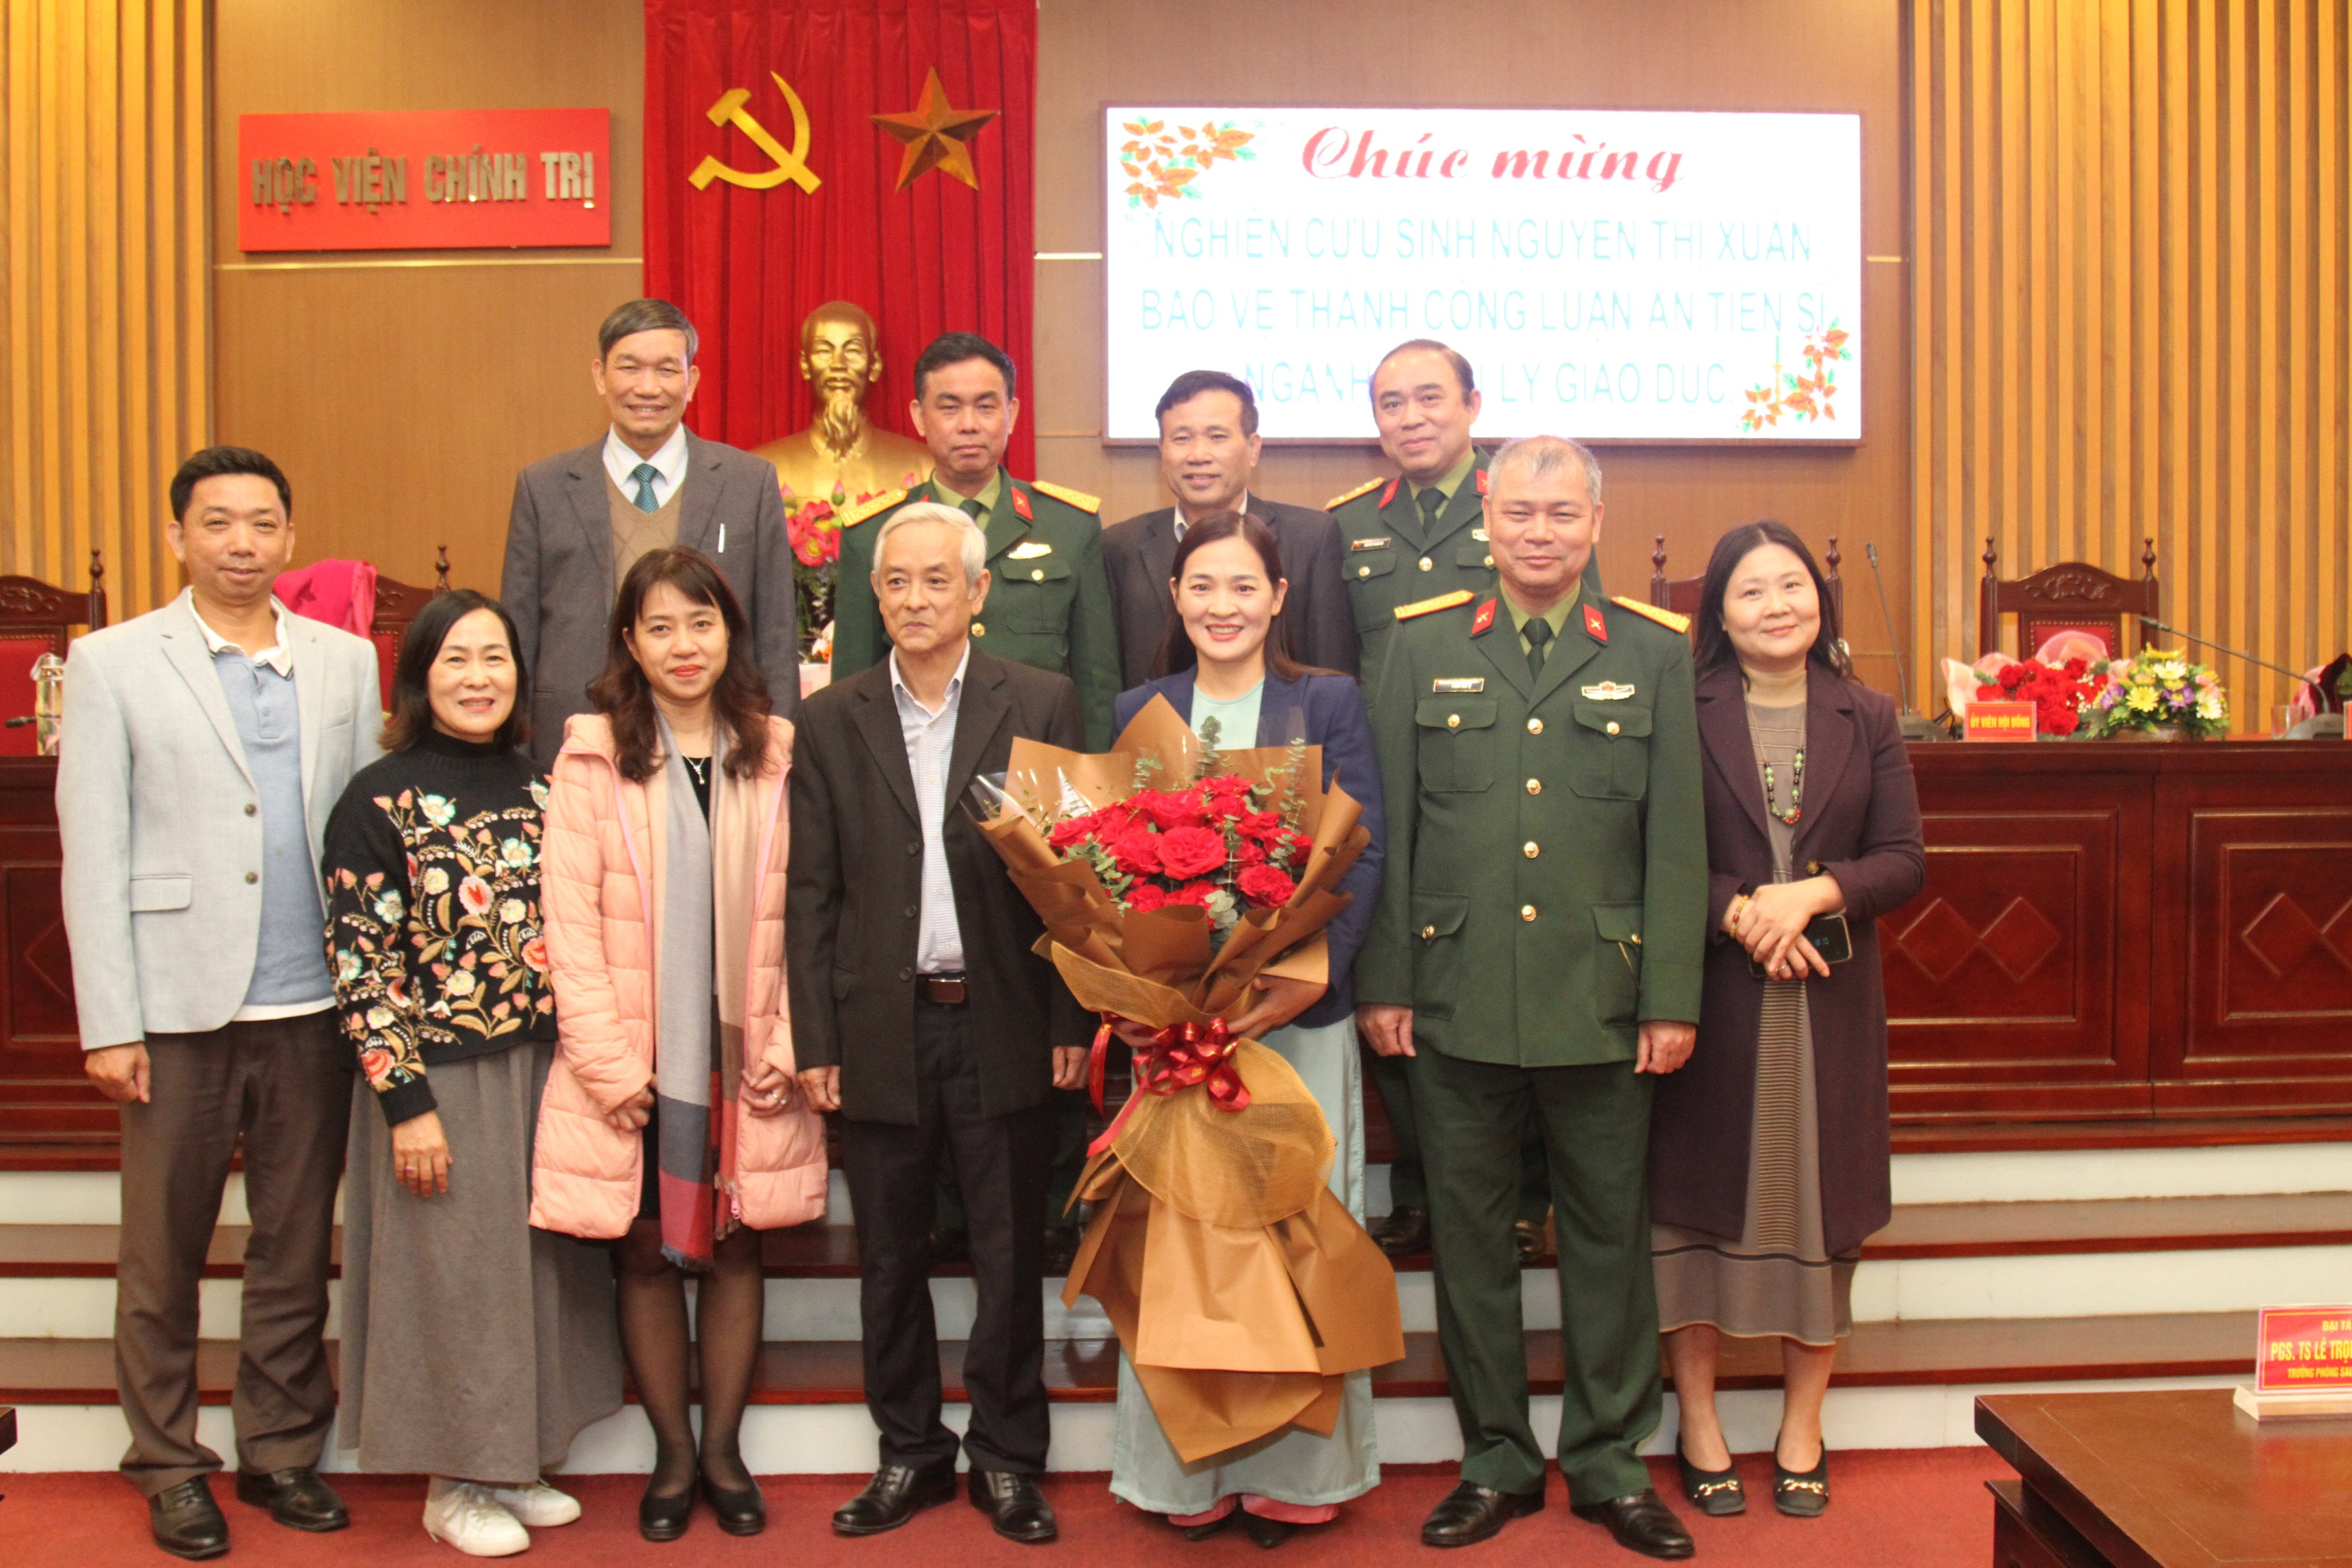 Nghiên cứu sinh Nguyễn Thị Xuân bảo vệ thành công luận án Tiến sĩ cấp Học viện